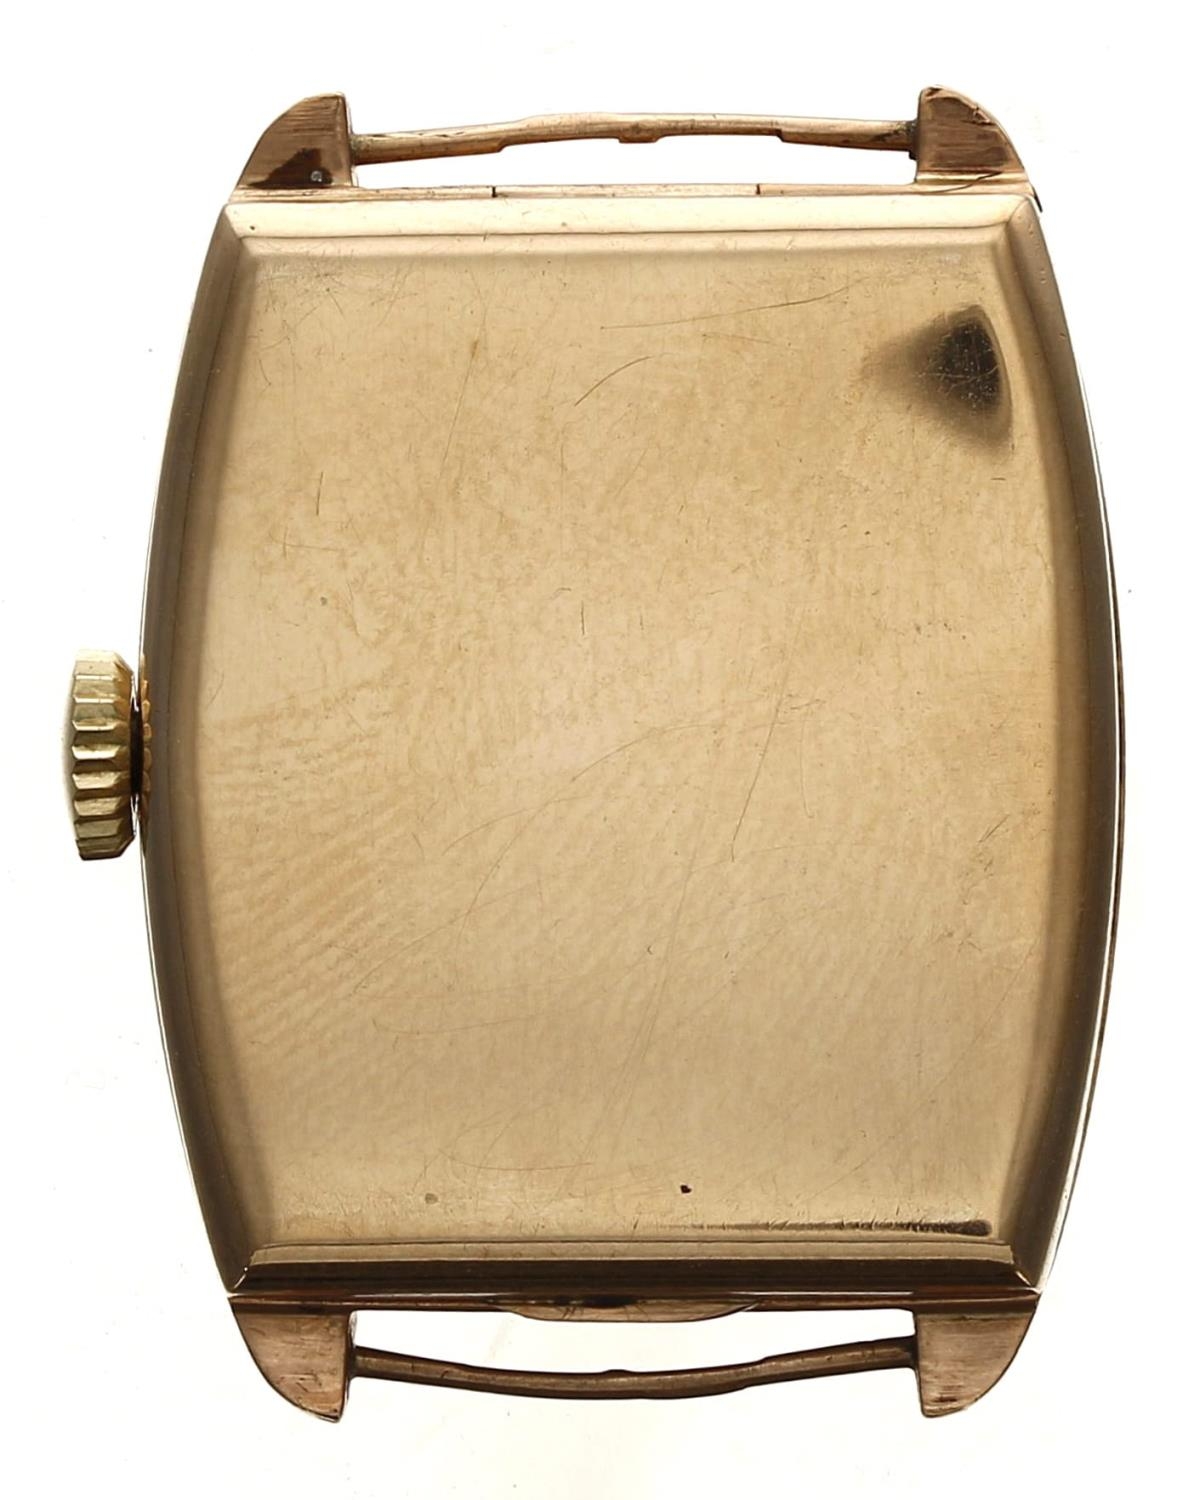 Marleys 9ct rectangular wire-lug gentleman's wristwatch, import hallmarks Glasgow 1930,  rectangular - Image 2 of 2